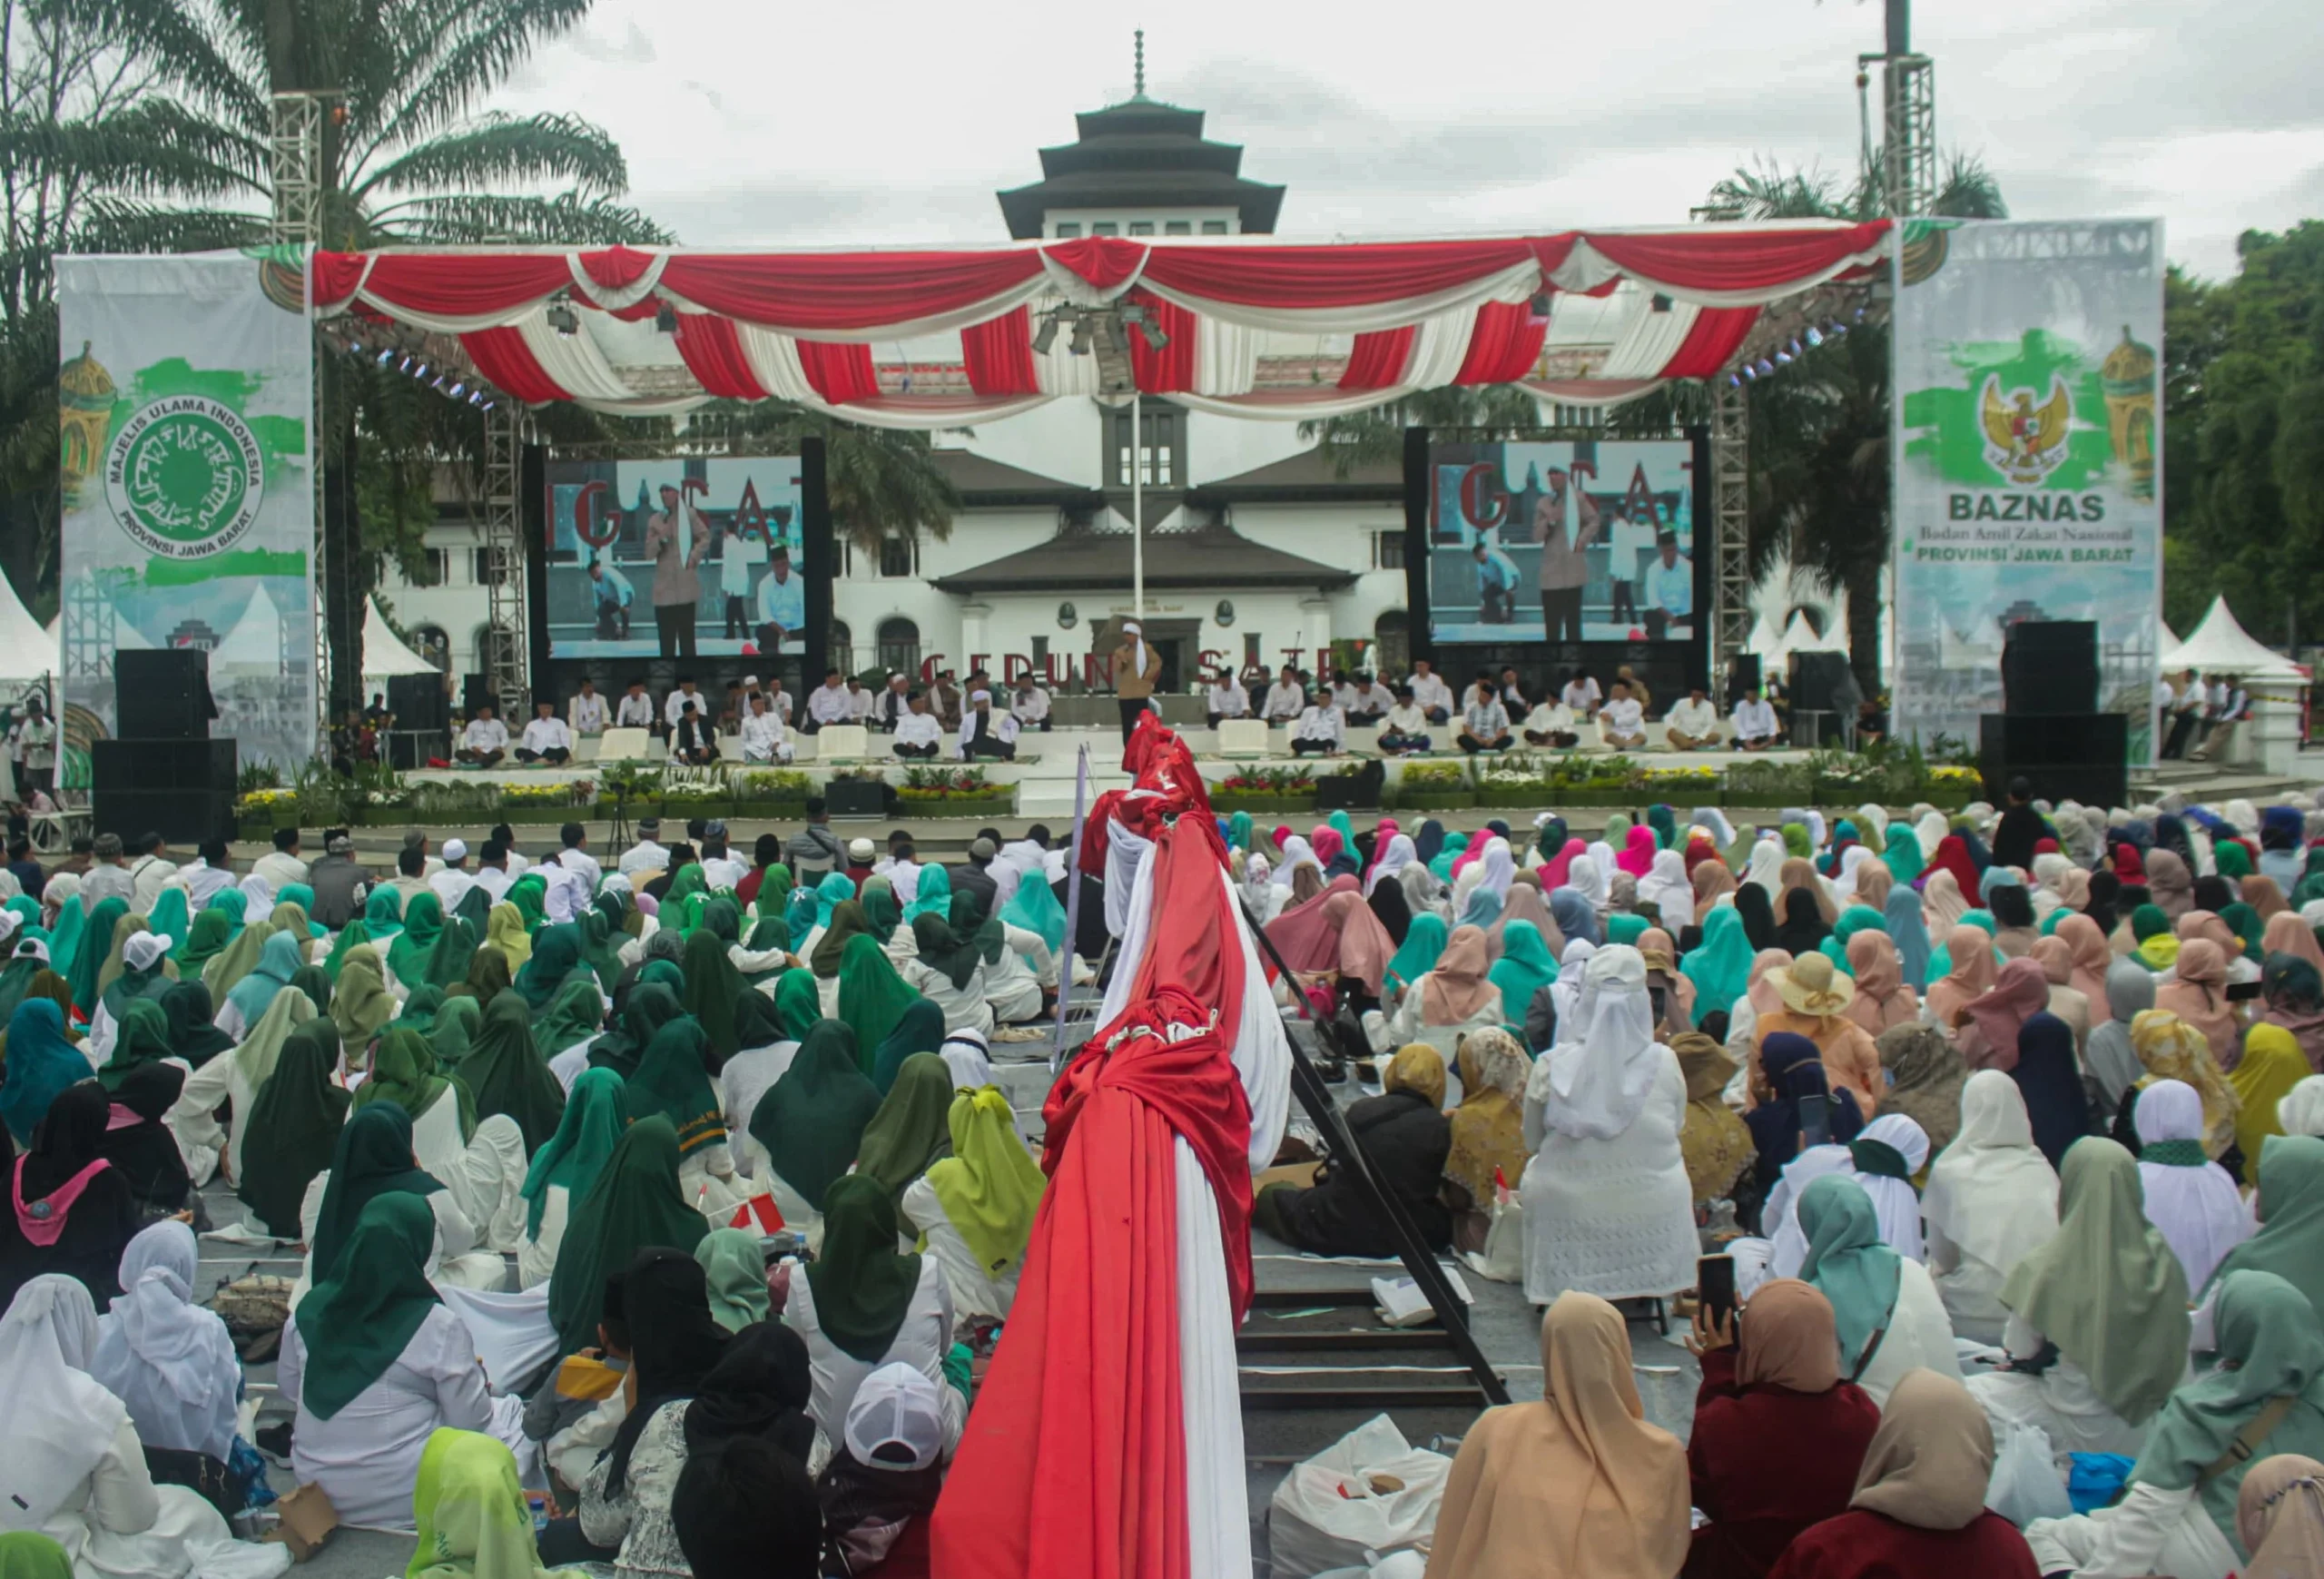 Ribuan jamaah hadiri Istigosah Kubro yang digelar MUI dan Pemprov Jabar di Jalan Diponogoro, Kota Bandung, Sabtu(9/3). (Pandu Muslim/Jabar Ekspres)